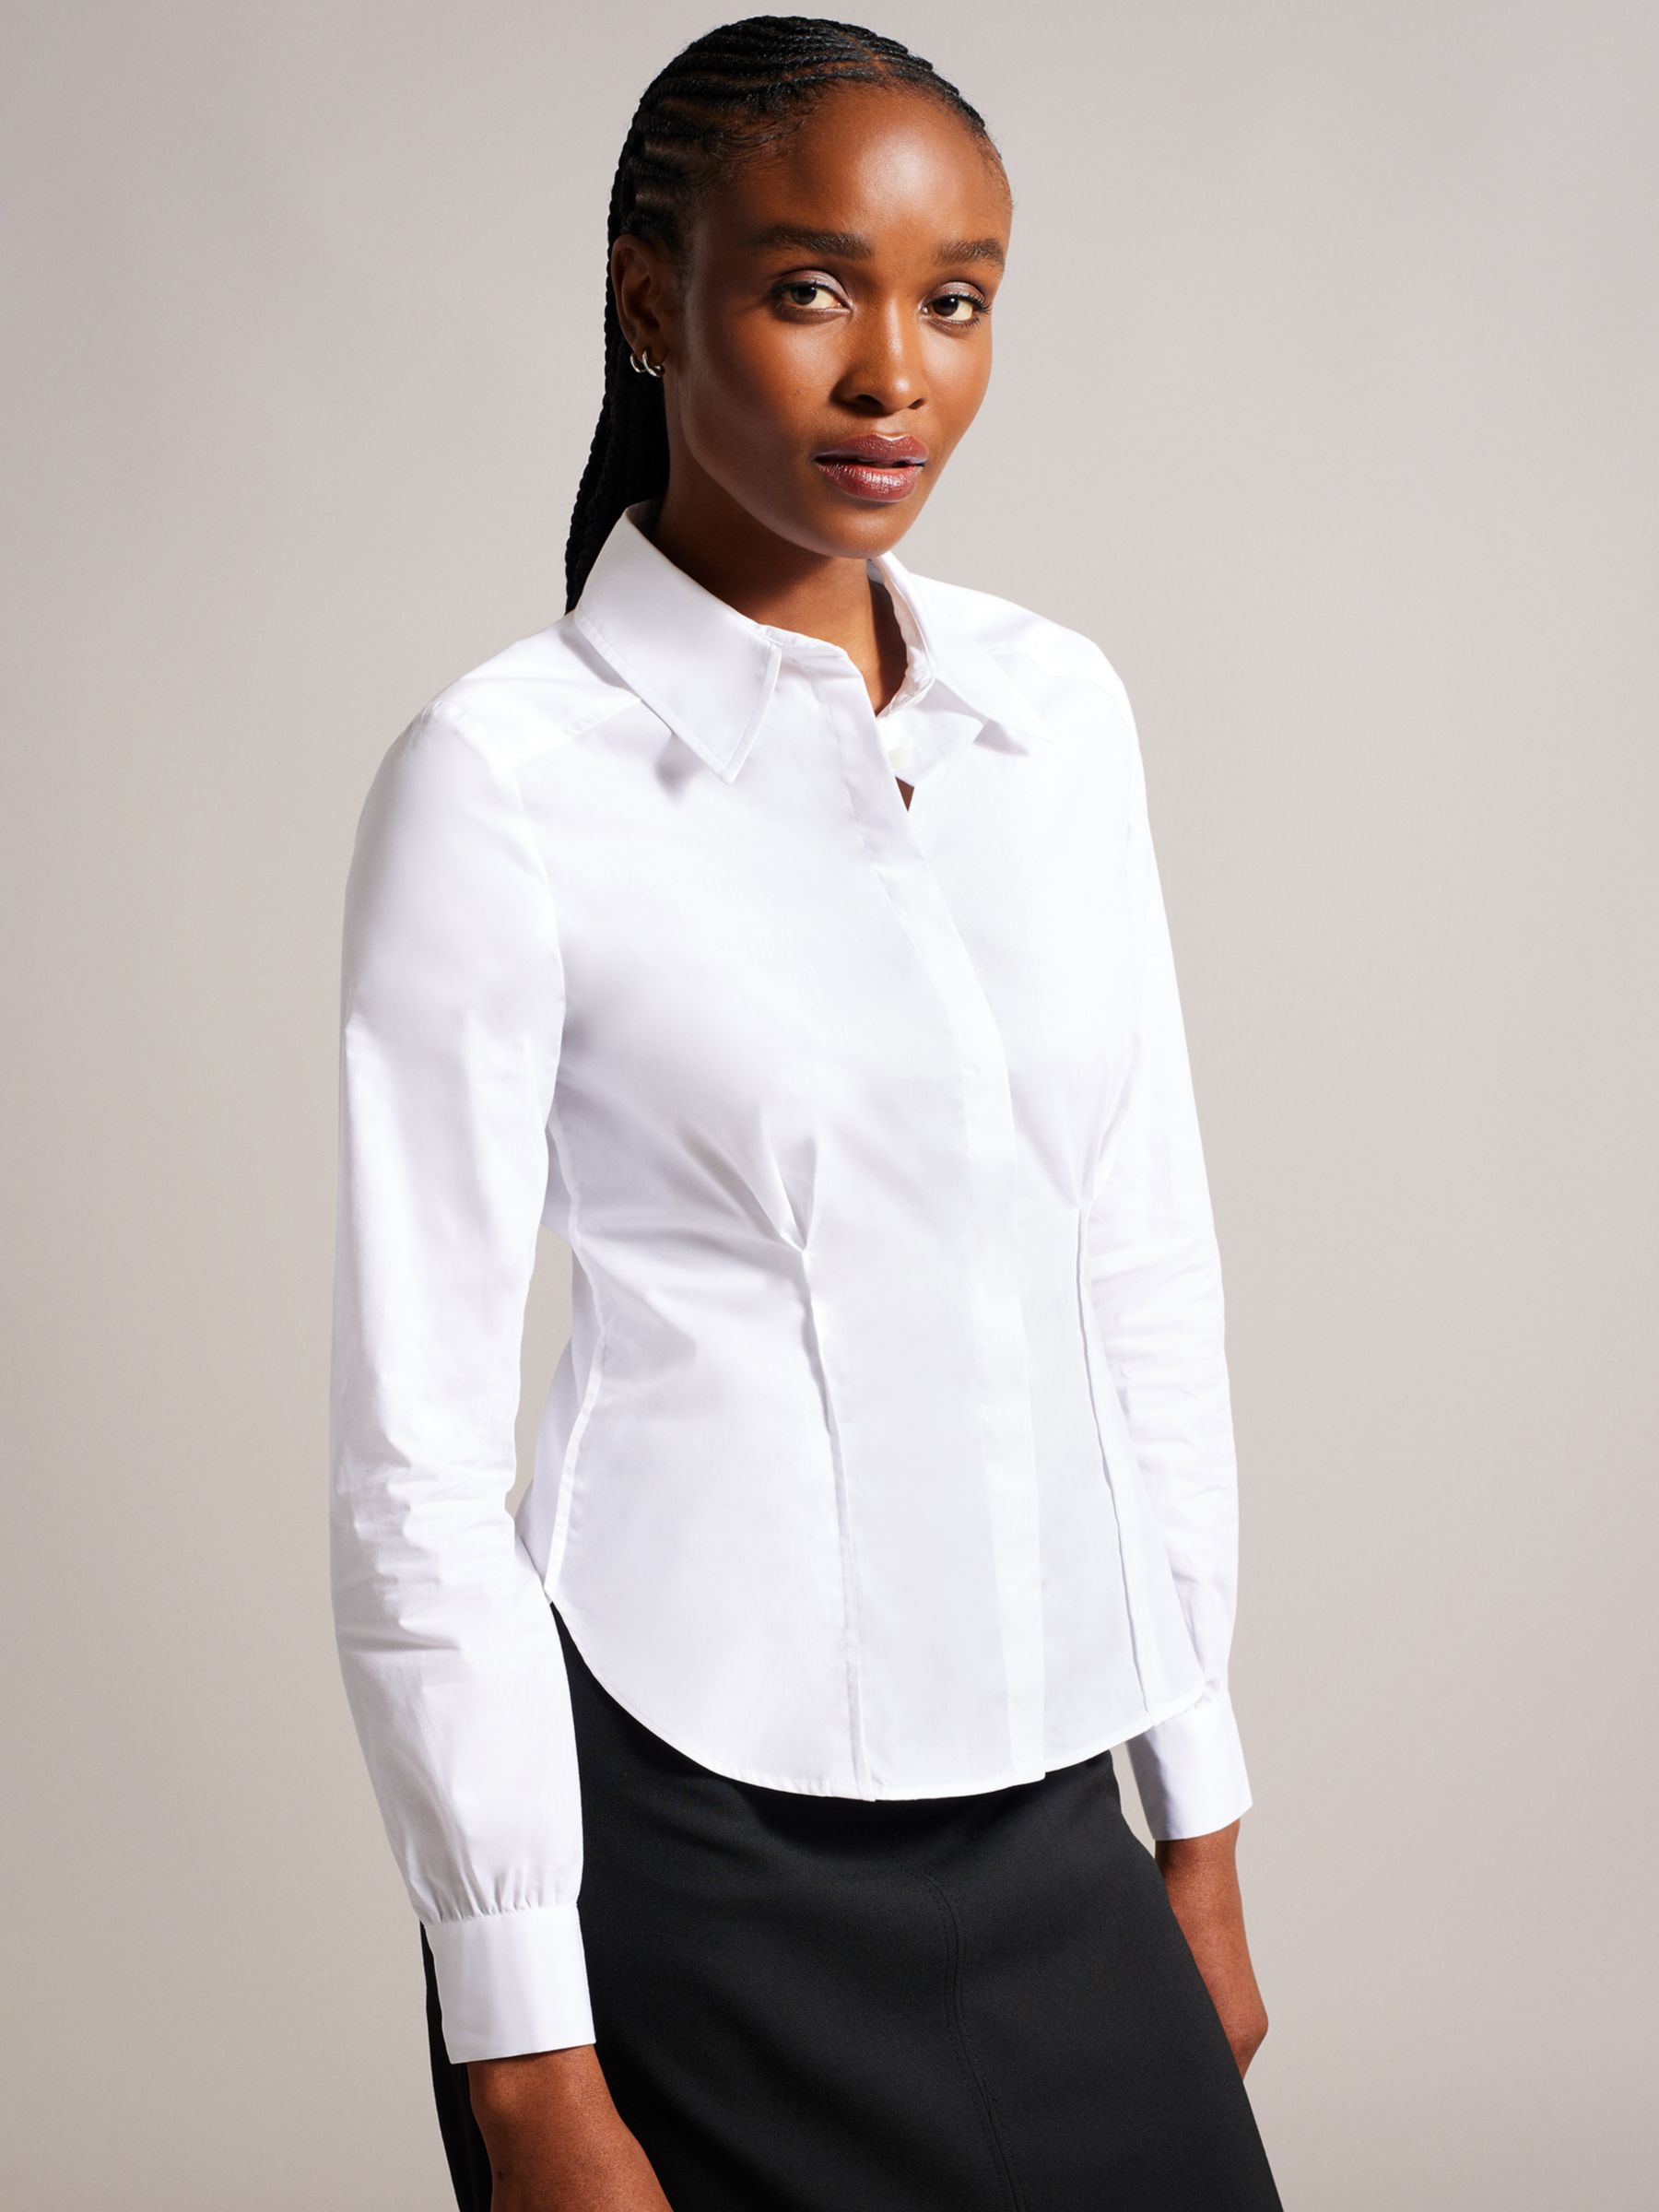 Приталенная рубашка Kayteii с открытыми швами Ted Baker, белый белый рубашка поло стандартного размера с длинными рукавами maste ted baker синий